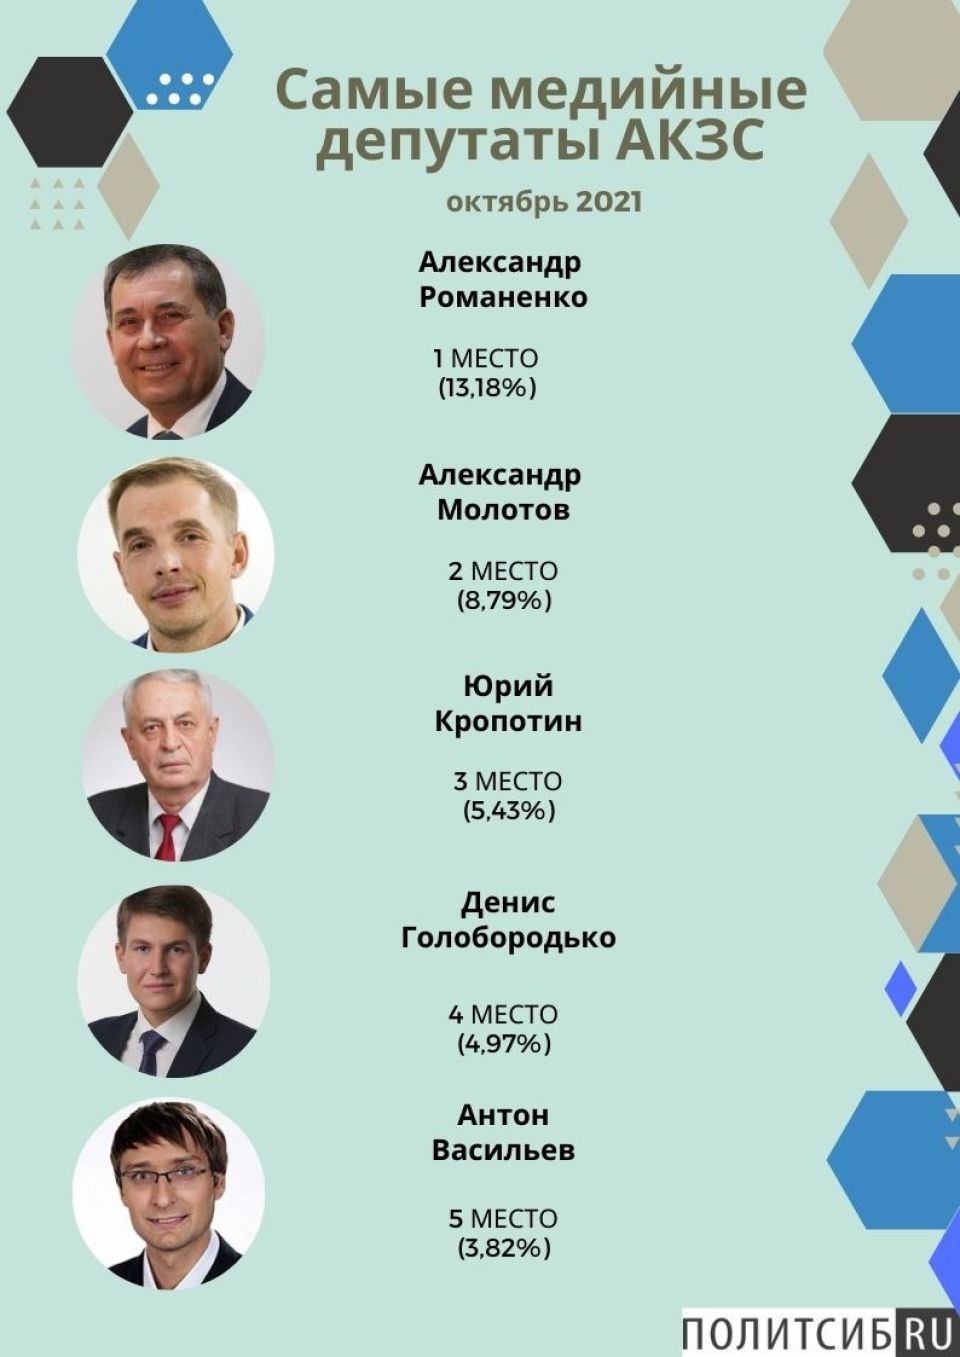 Рейтинг медийности депутатов АКЗС в октябре 2021 года